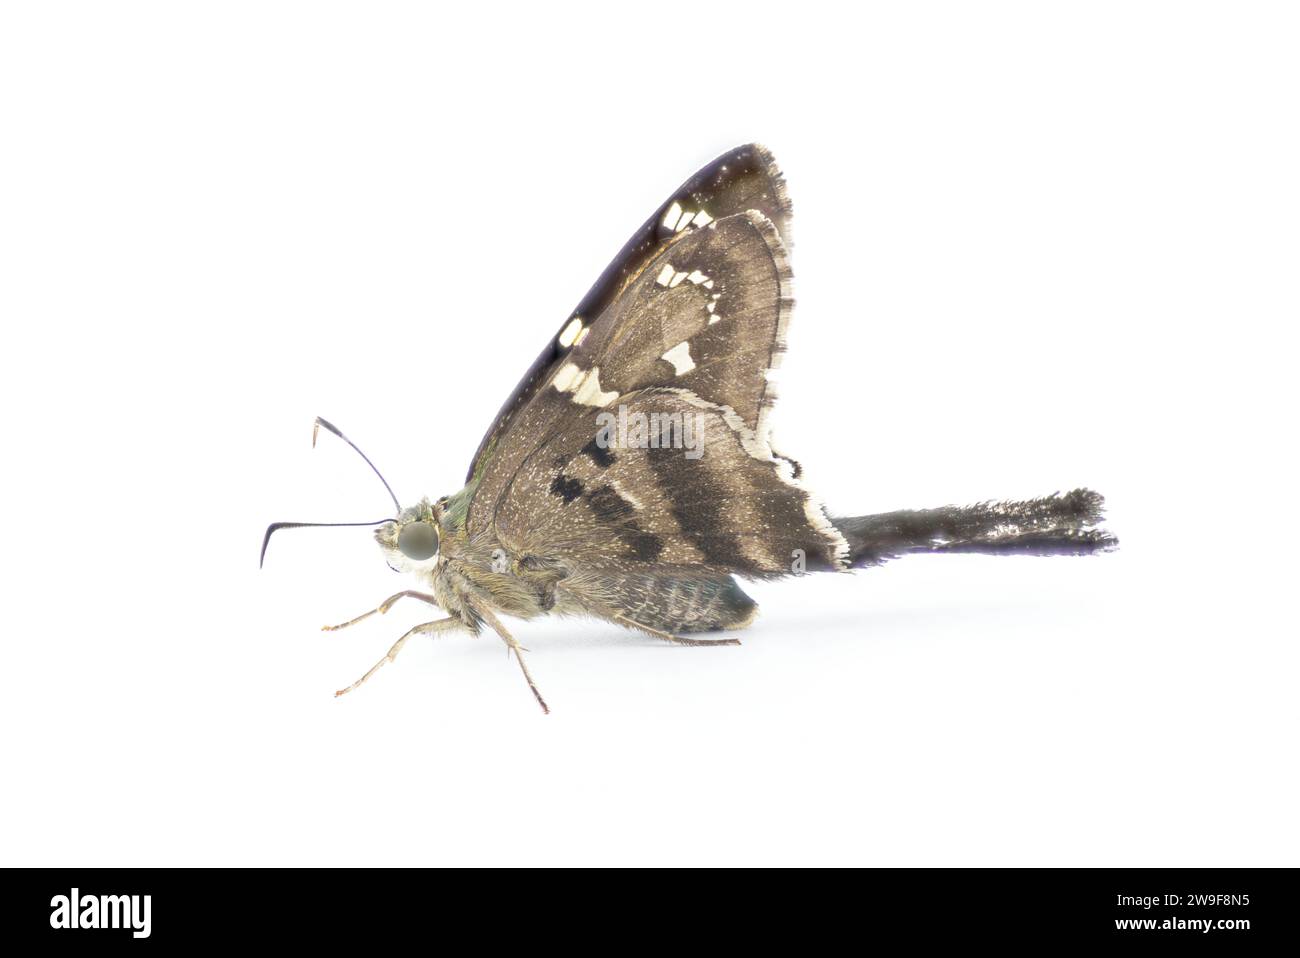 Skipper dalla coda lunga o frullatore di fagioli - Urbanus proteus - grande farfalla grigia, nera con torace blu verde comune nel sud-est degli Stati Uniti Foto Stock